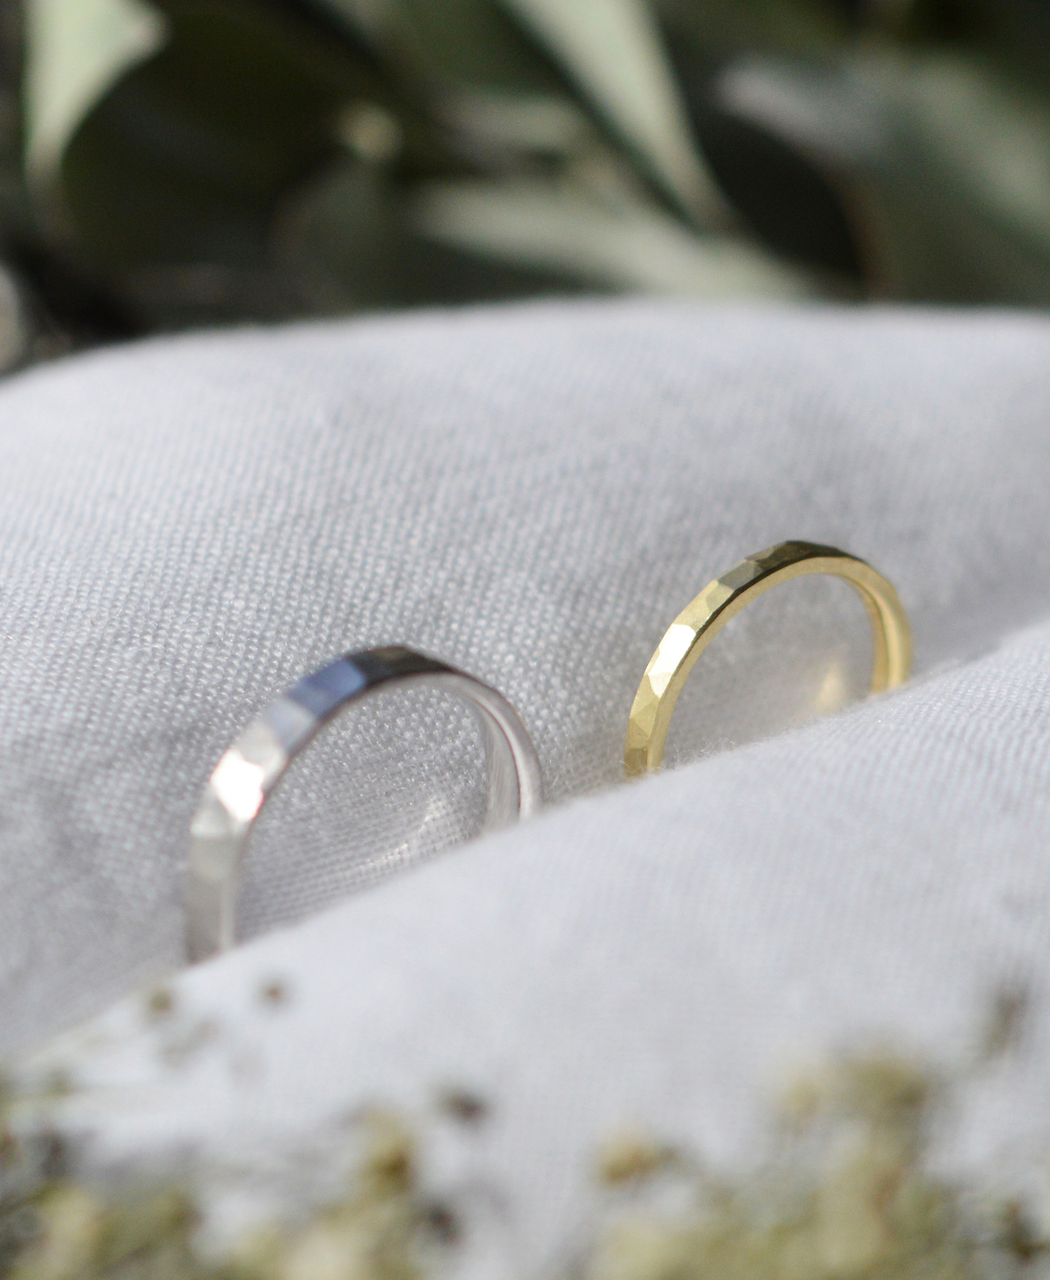 renri レンリ - 横浜で結婚指輪・婚約指輪の手作り・オーダーメイド